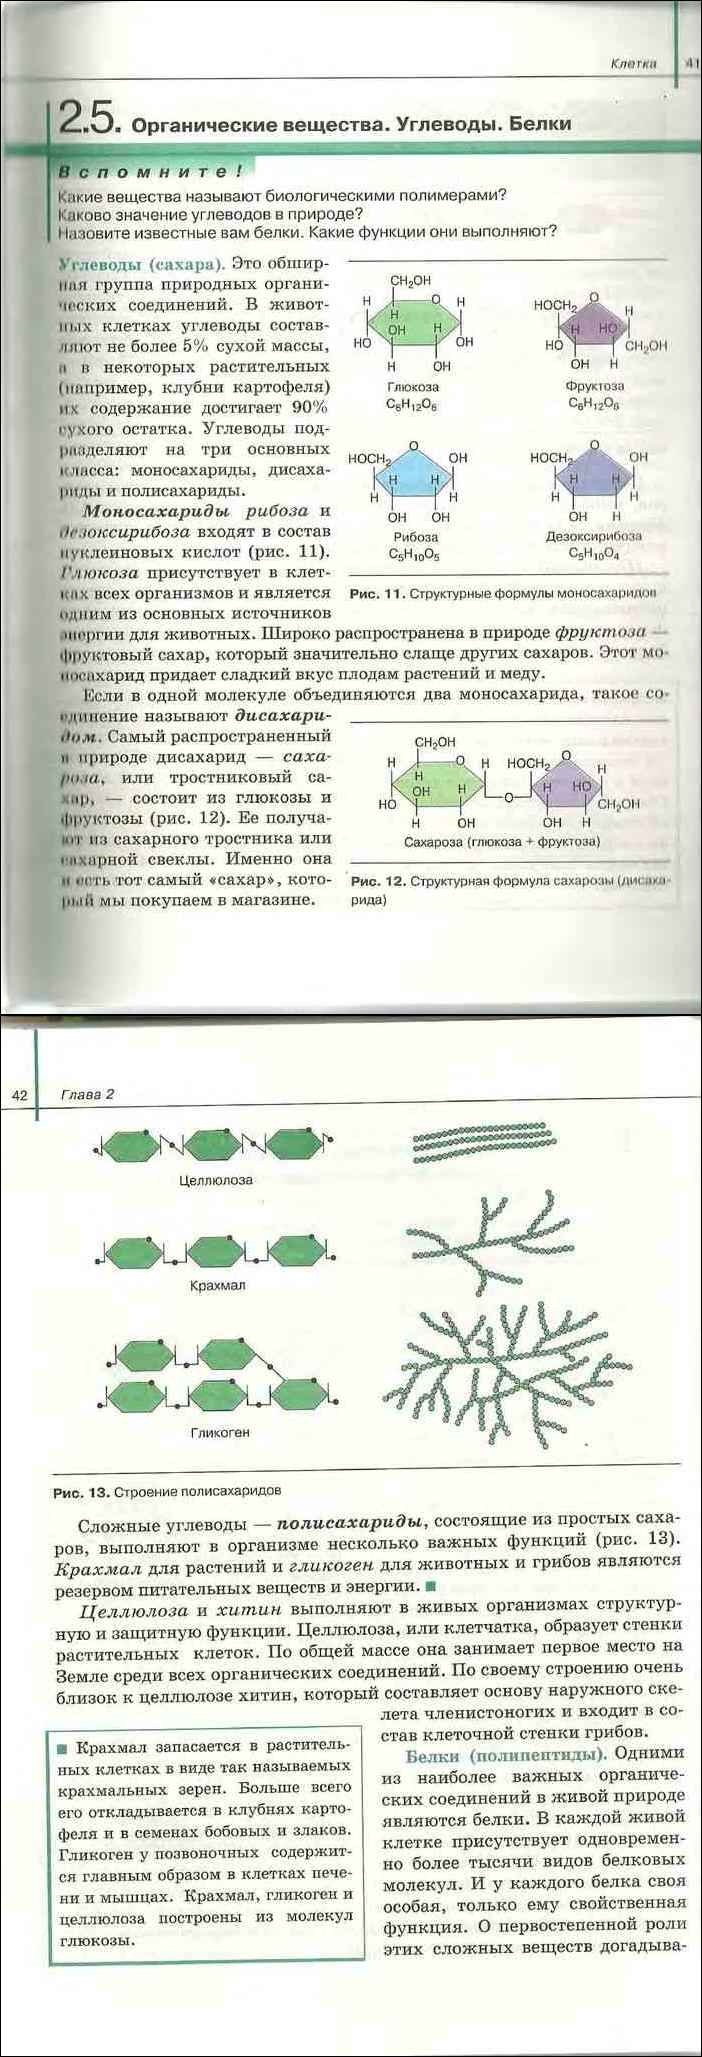 Учебник биологии 11 класс сивоглазов агафонова